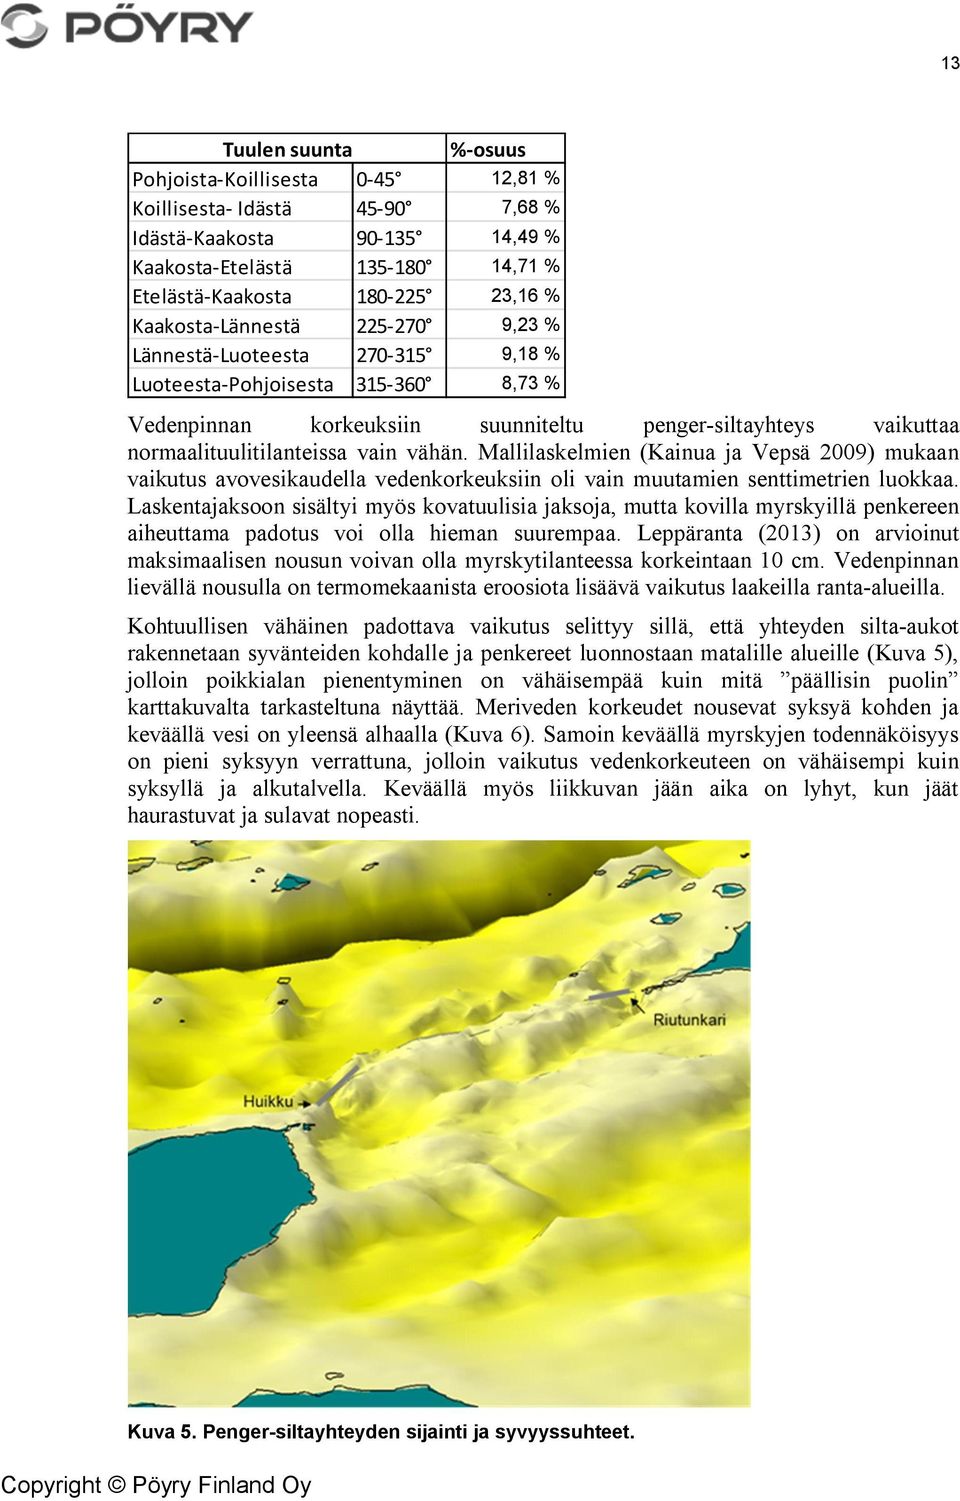 vähän. Mallilaskelmien (Kainua ja Vepsä 2009) mukaan vaikutus avovesikaudella vedenkorkeuksiin oli vain muutamien senttimetrien luokkaa.